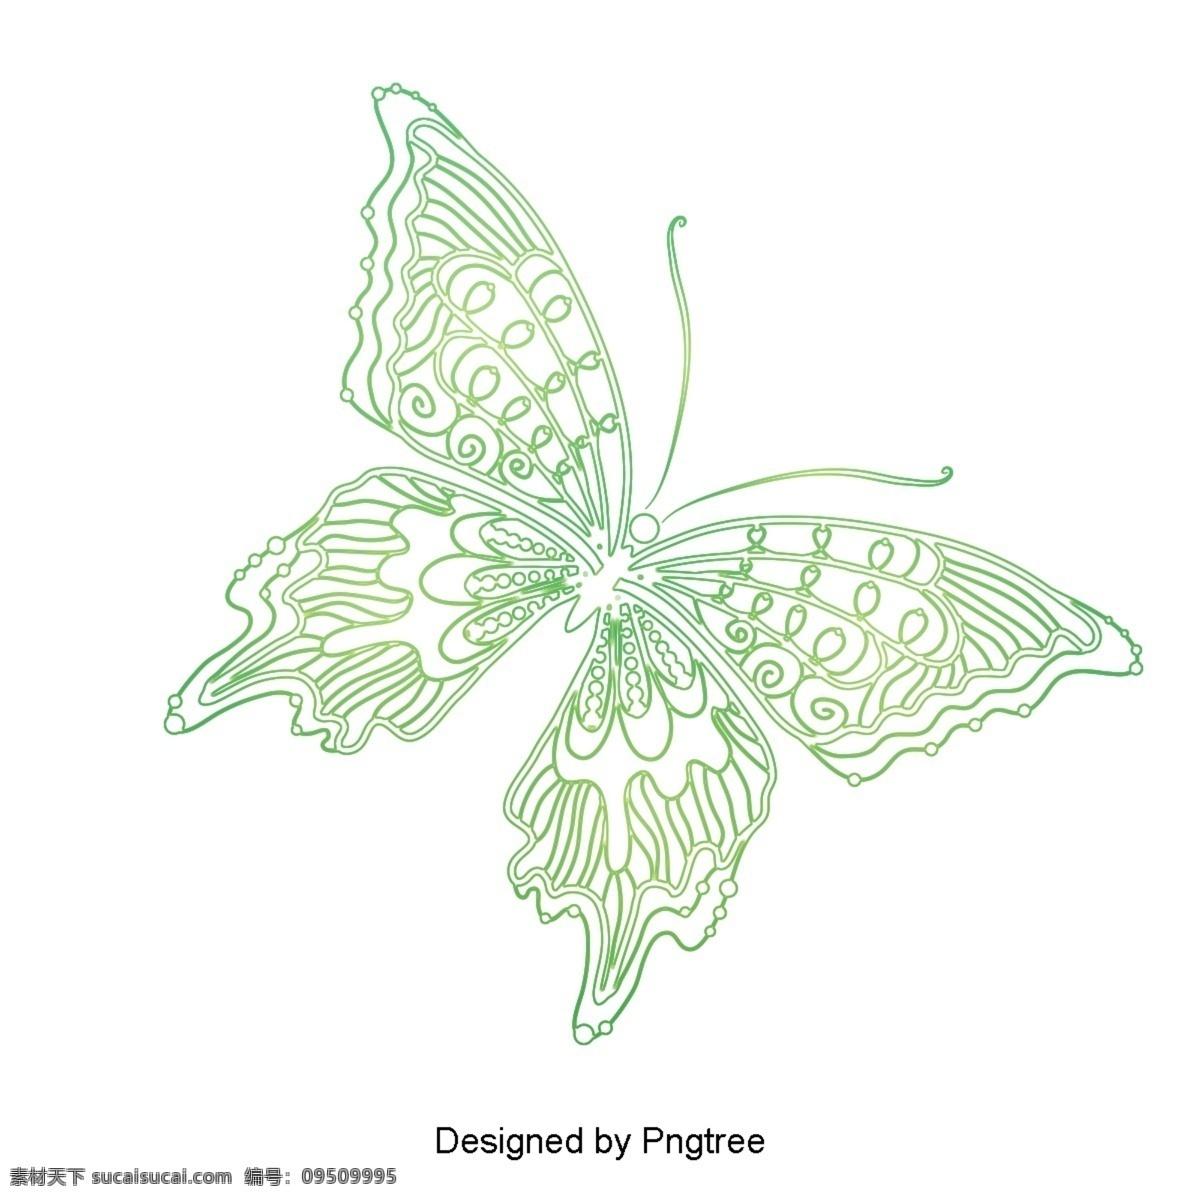 简单 手绘 美学 蝴蝶 图案 美丽 梦幻 昆虫 自然 生物 装饰 线条